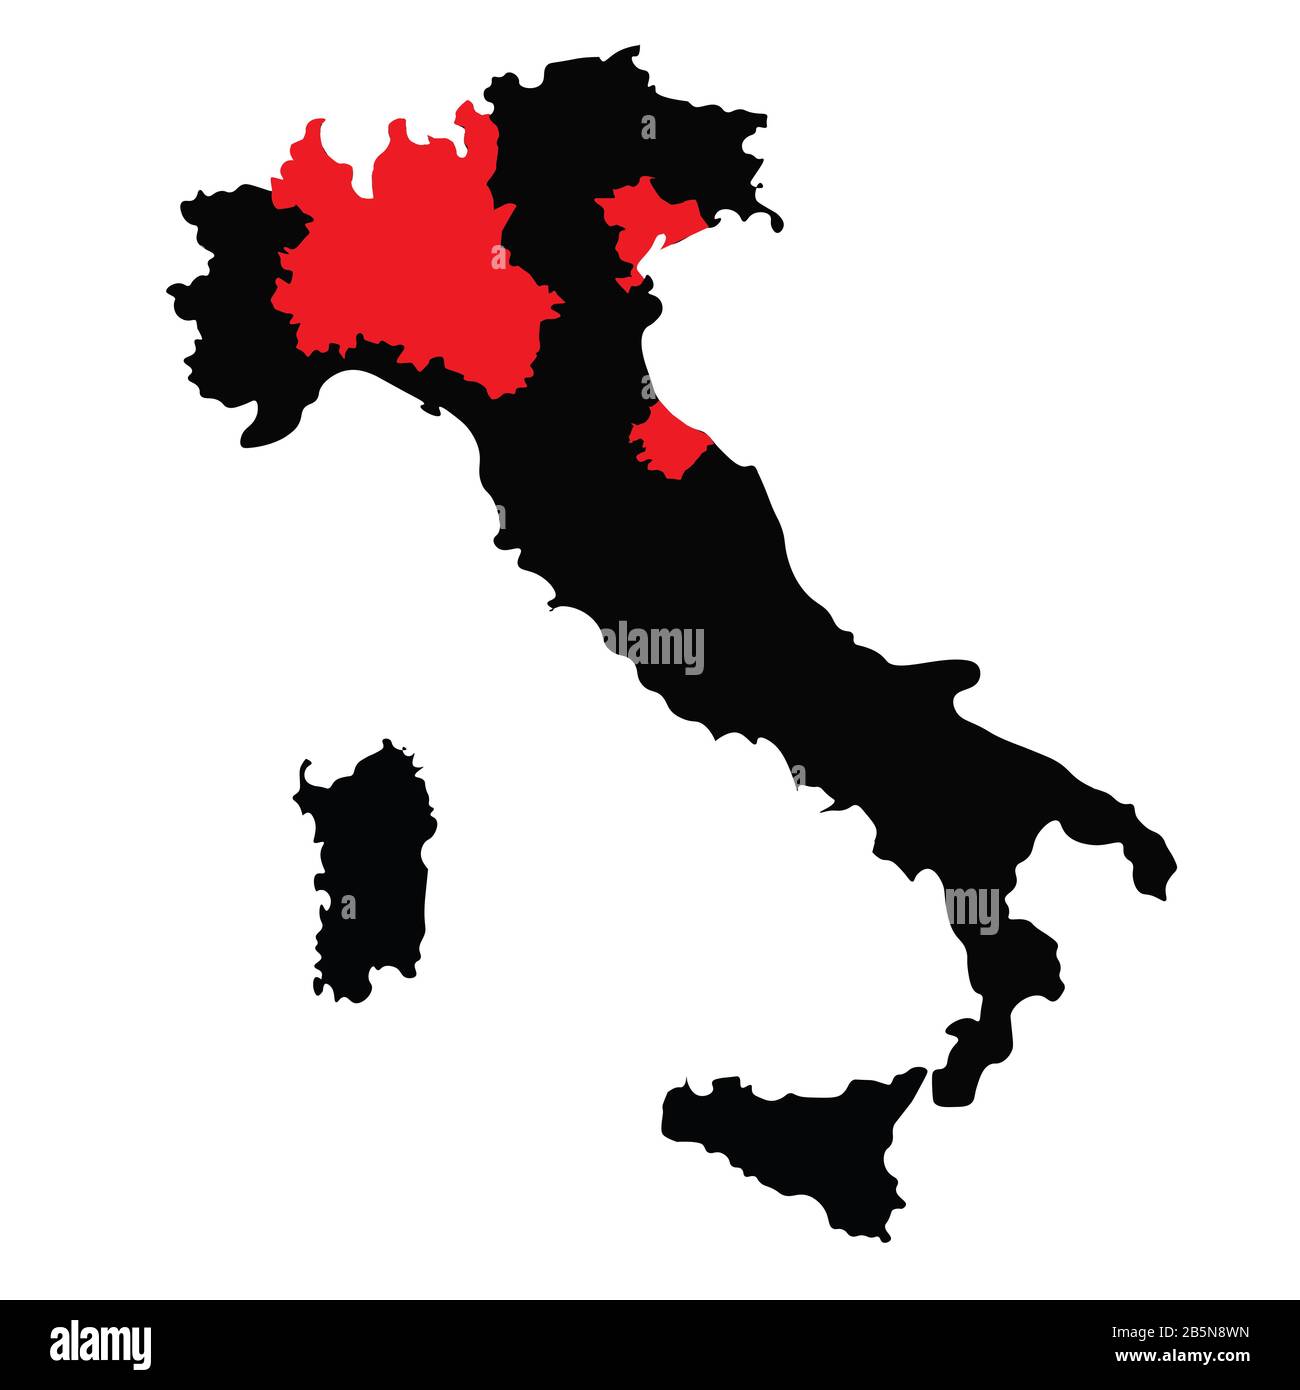 Mappa Italia con aree di blocco a causa della quarantena di Coronavirus dall'8 marzo 2020. Silhouette nera della mappa italiana. Immagine raster. Foto Stock